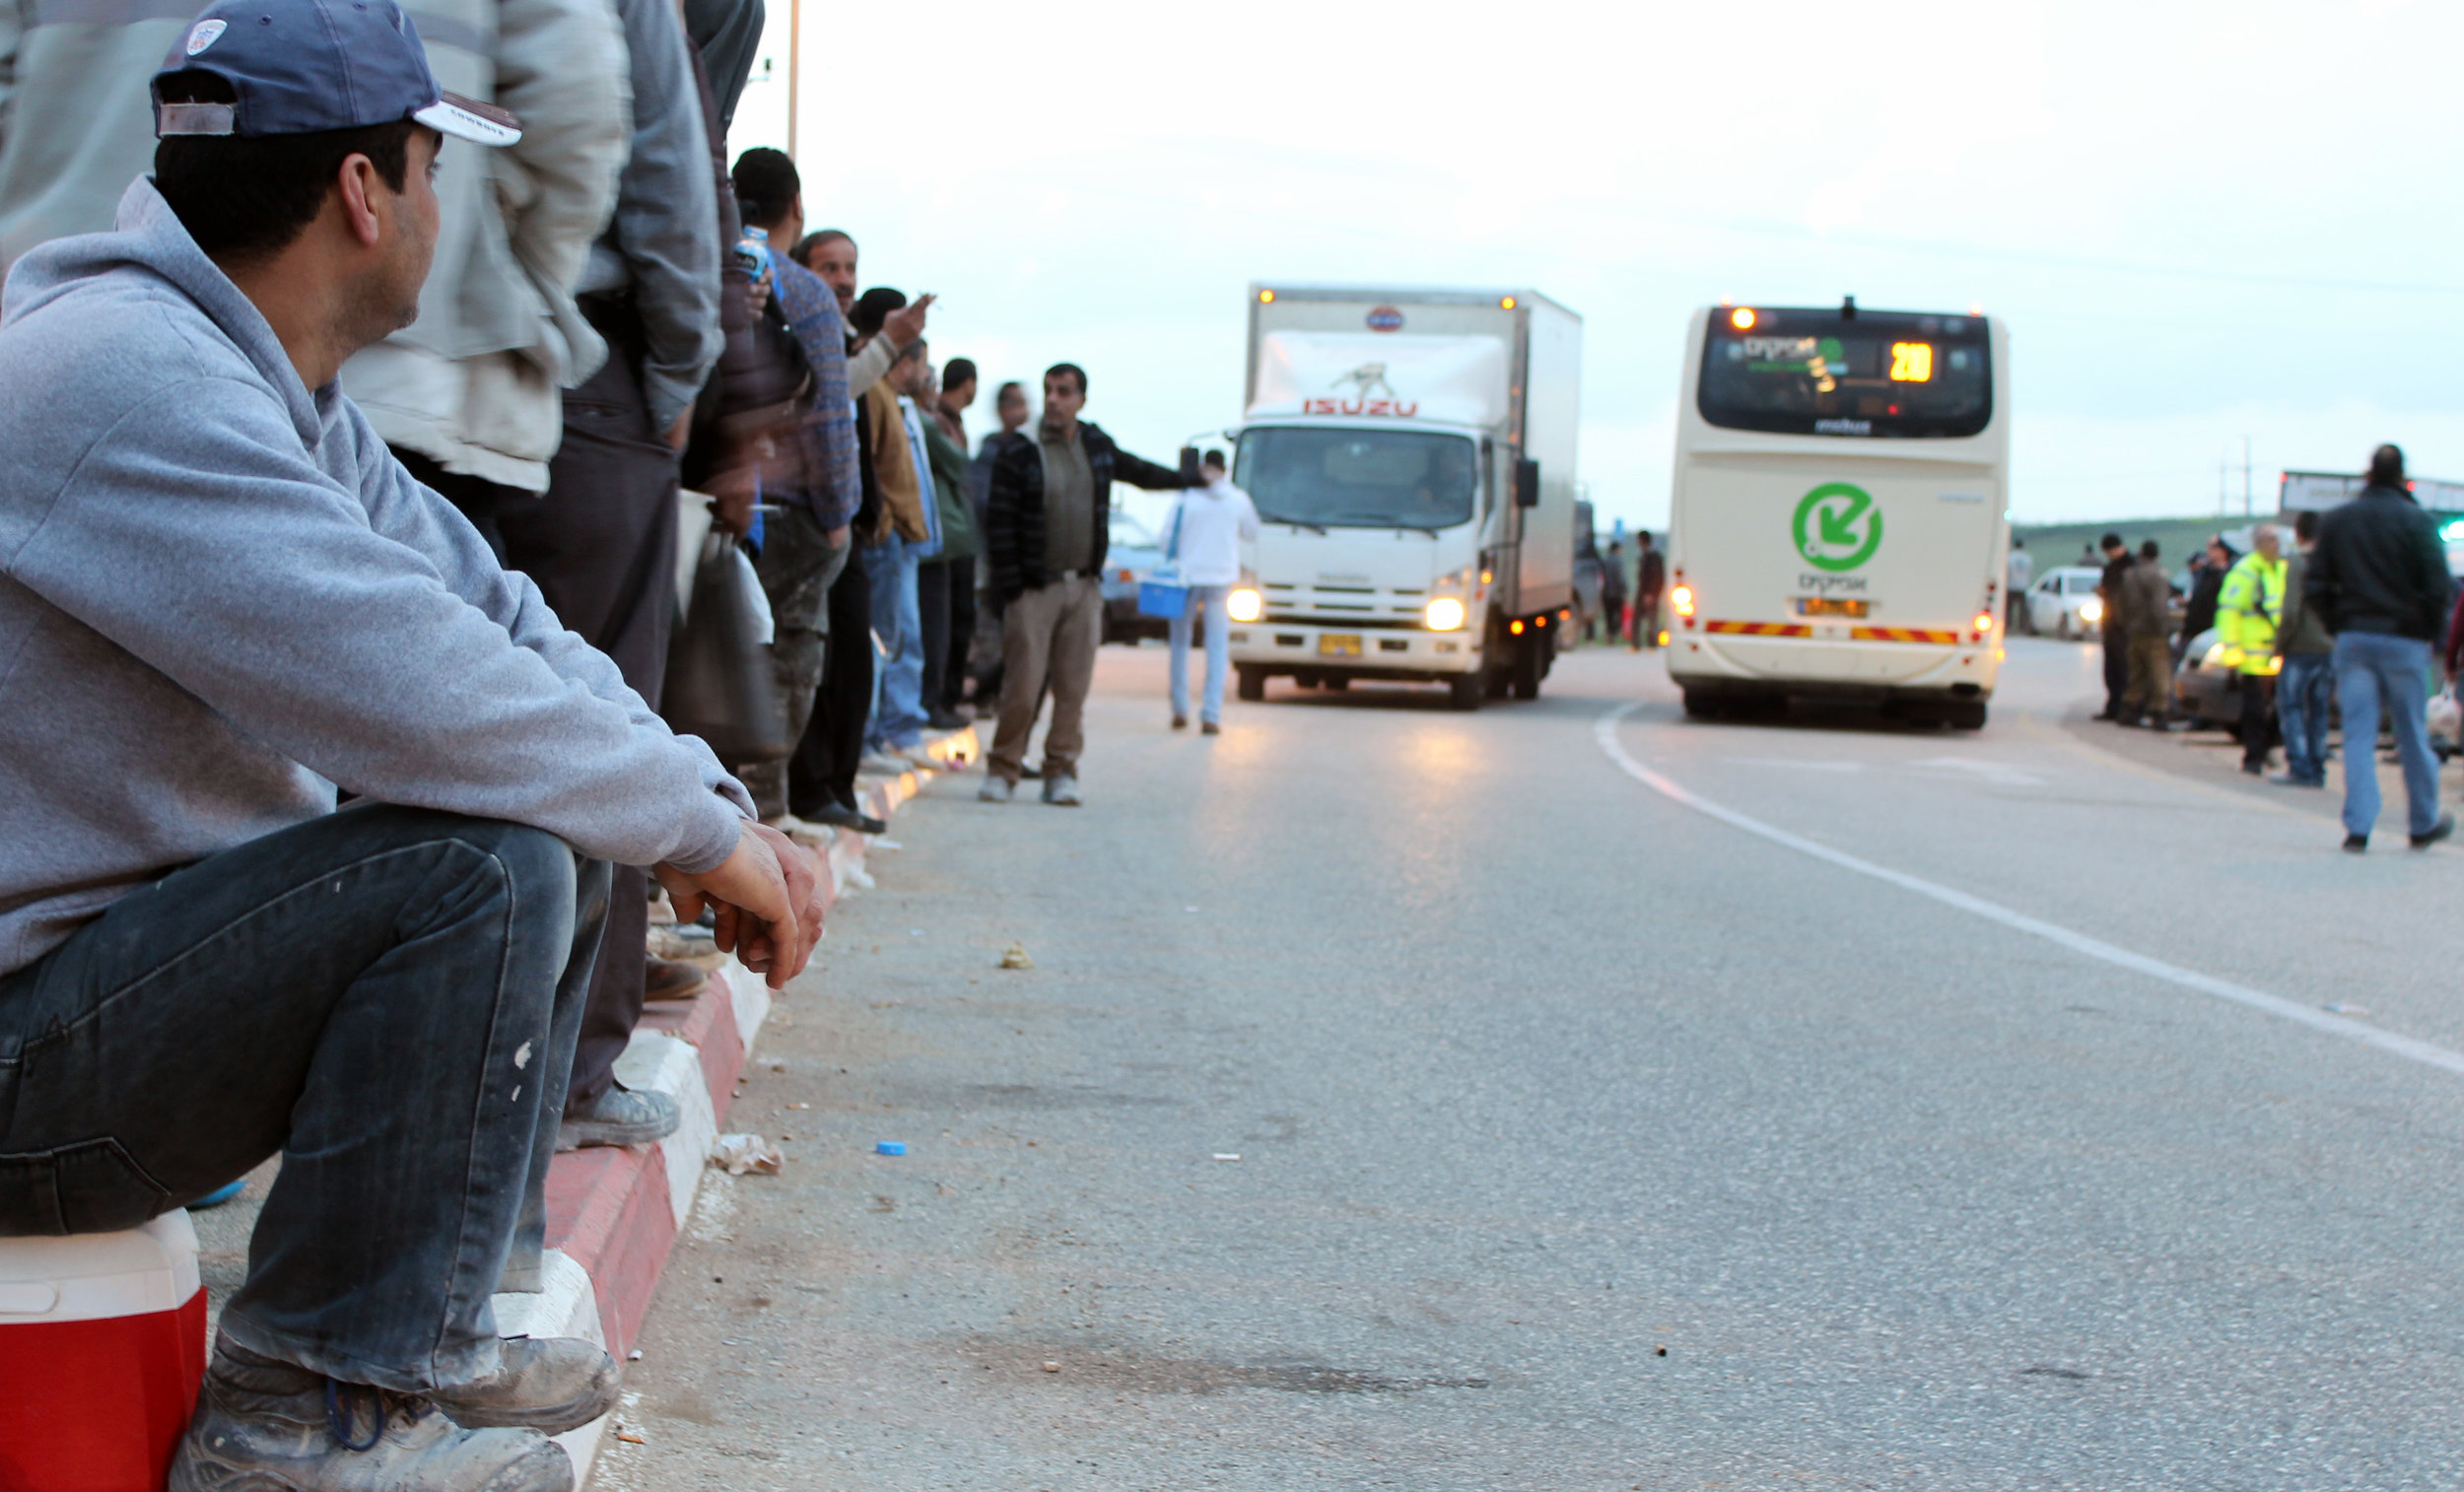 20130305 - Palestinian worker wait for bus.jpg